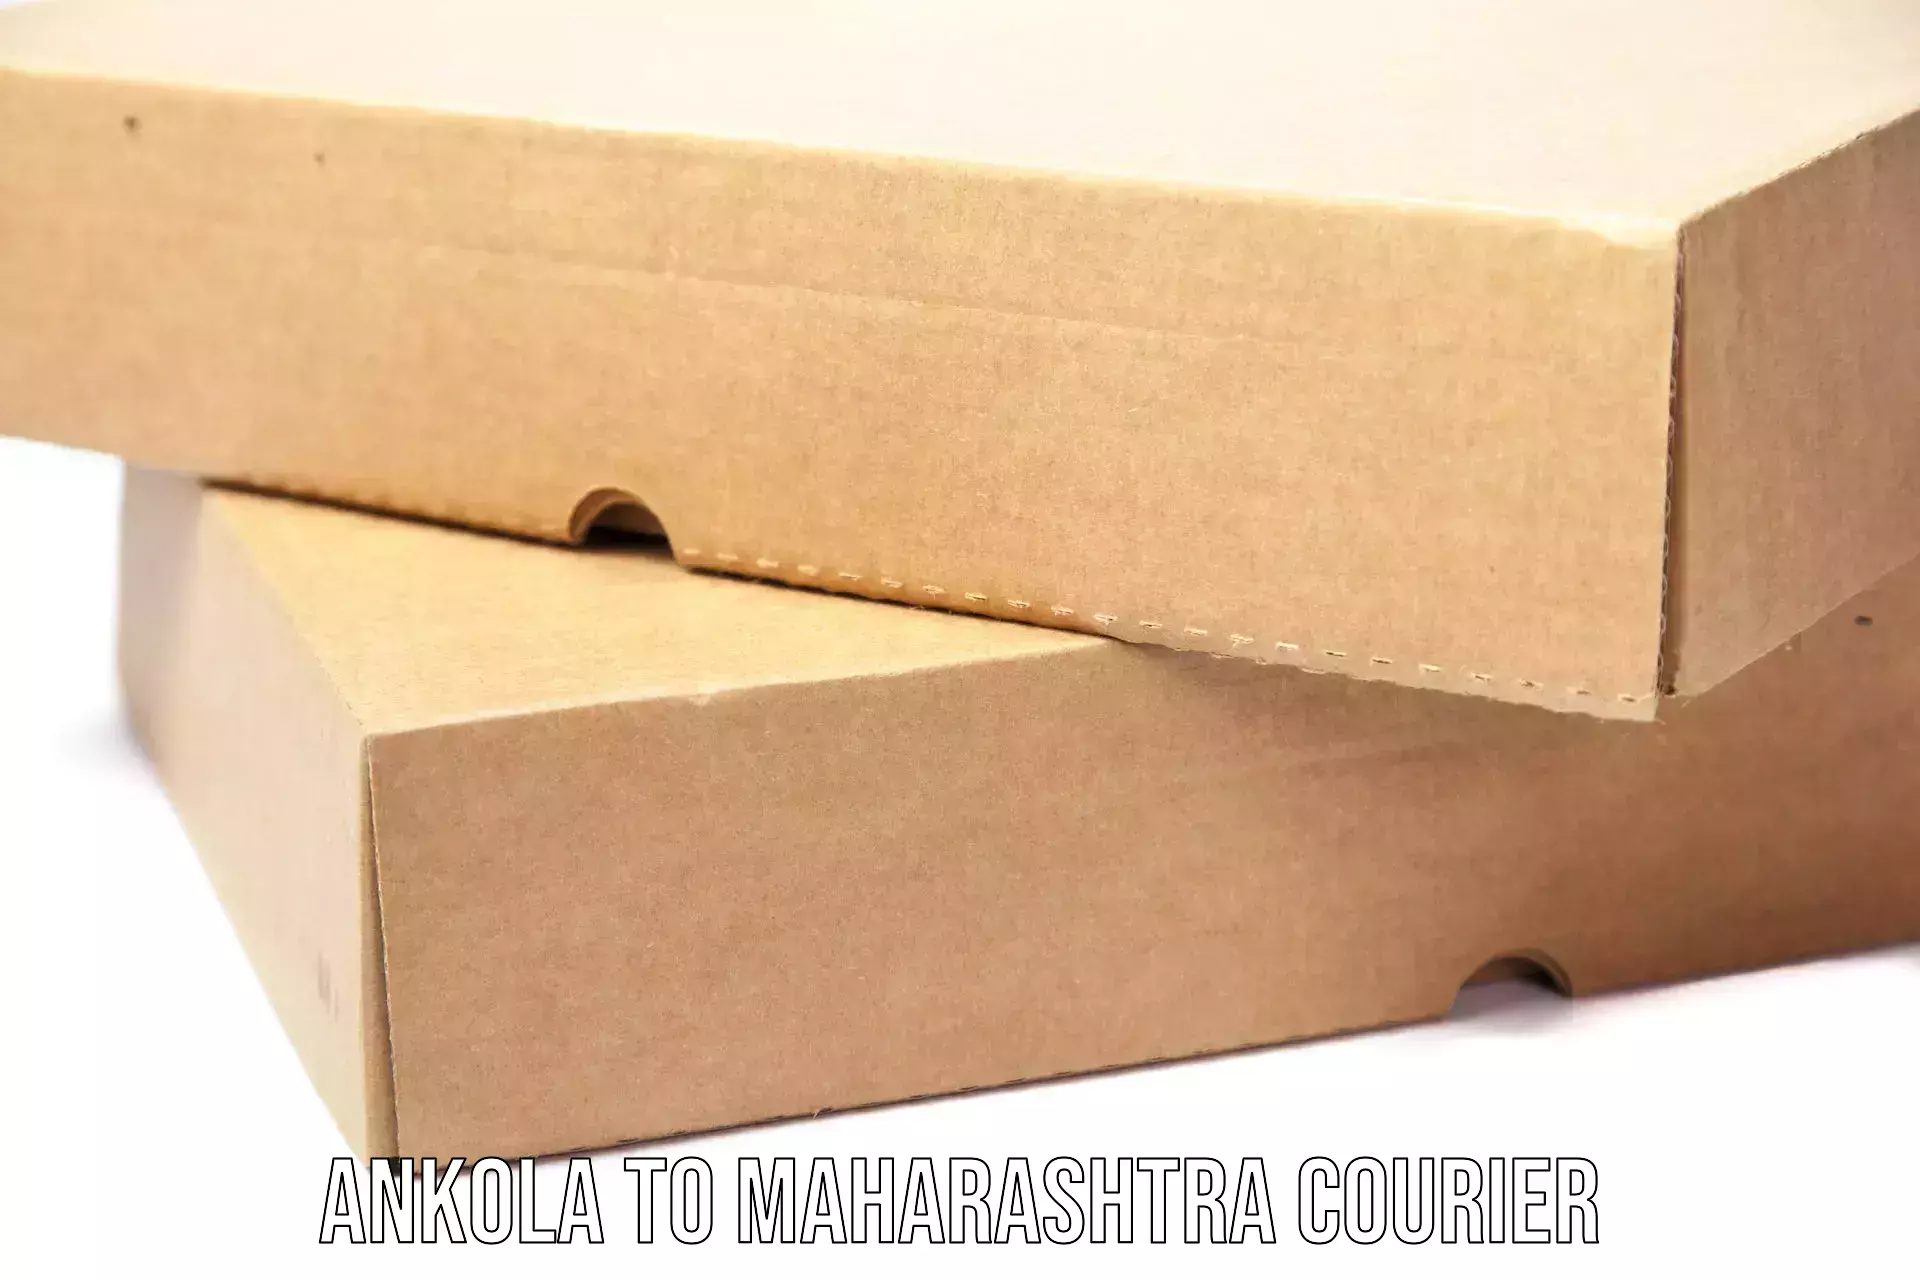 Supply chain delivery Ankola to Maharashtra